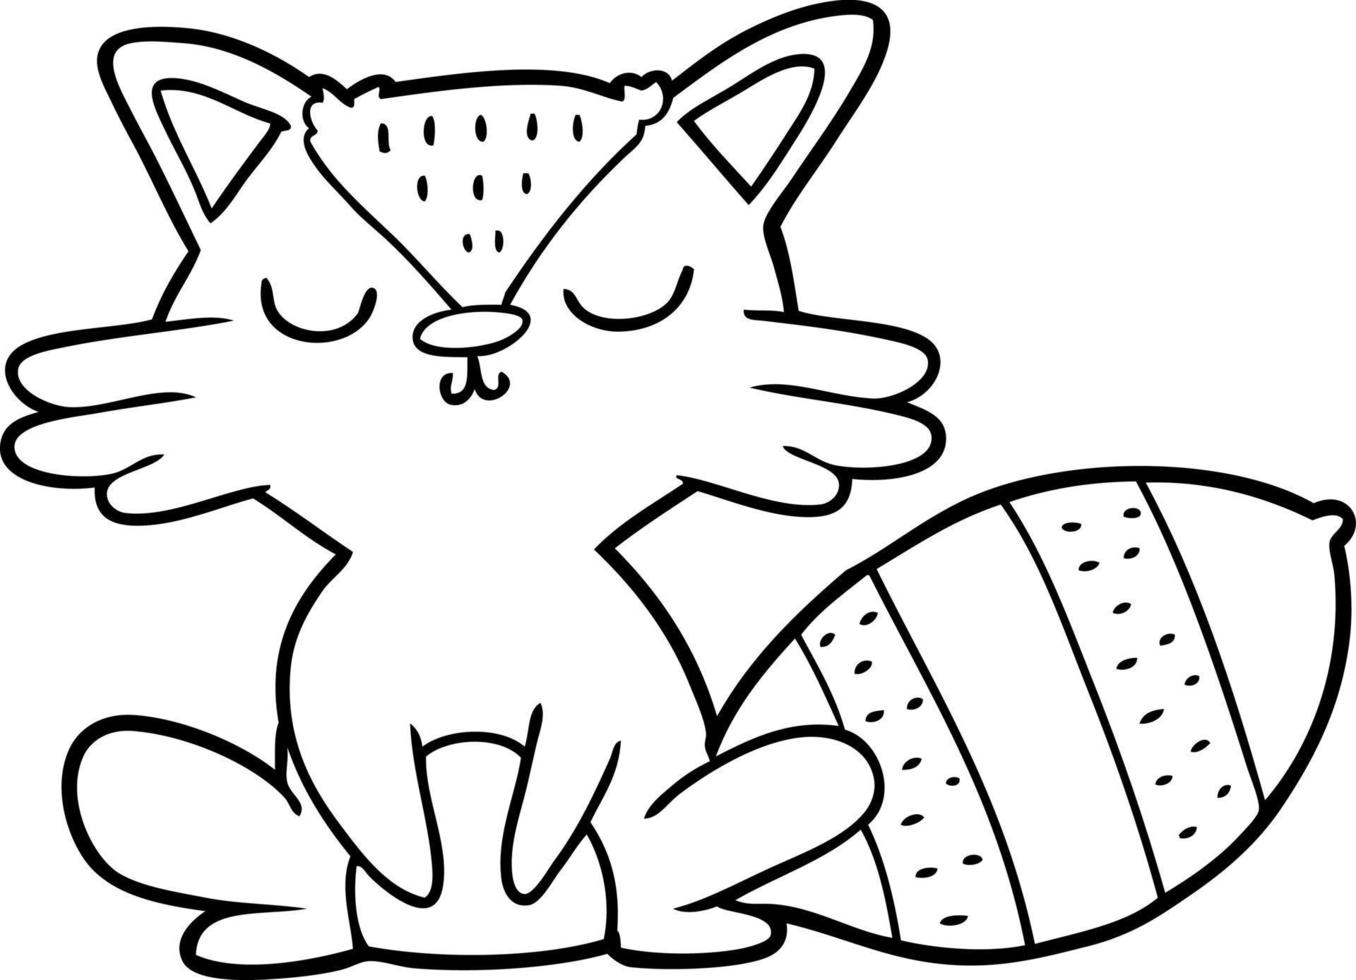 Cartoon raccoon character vector